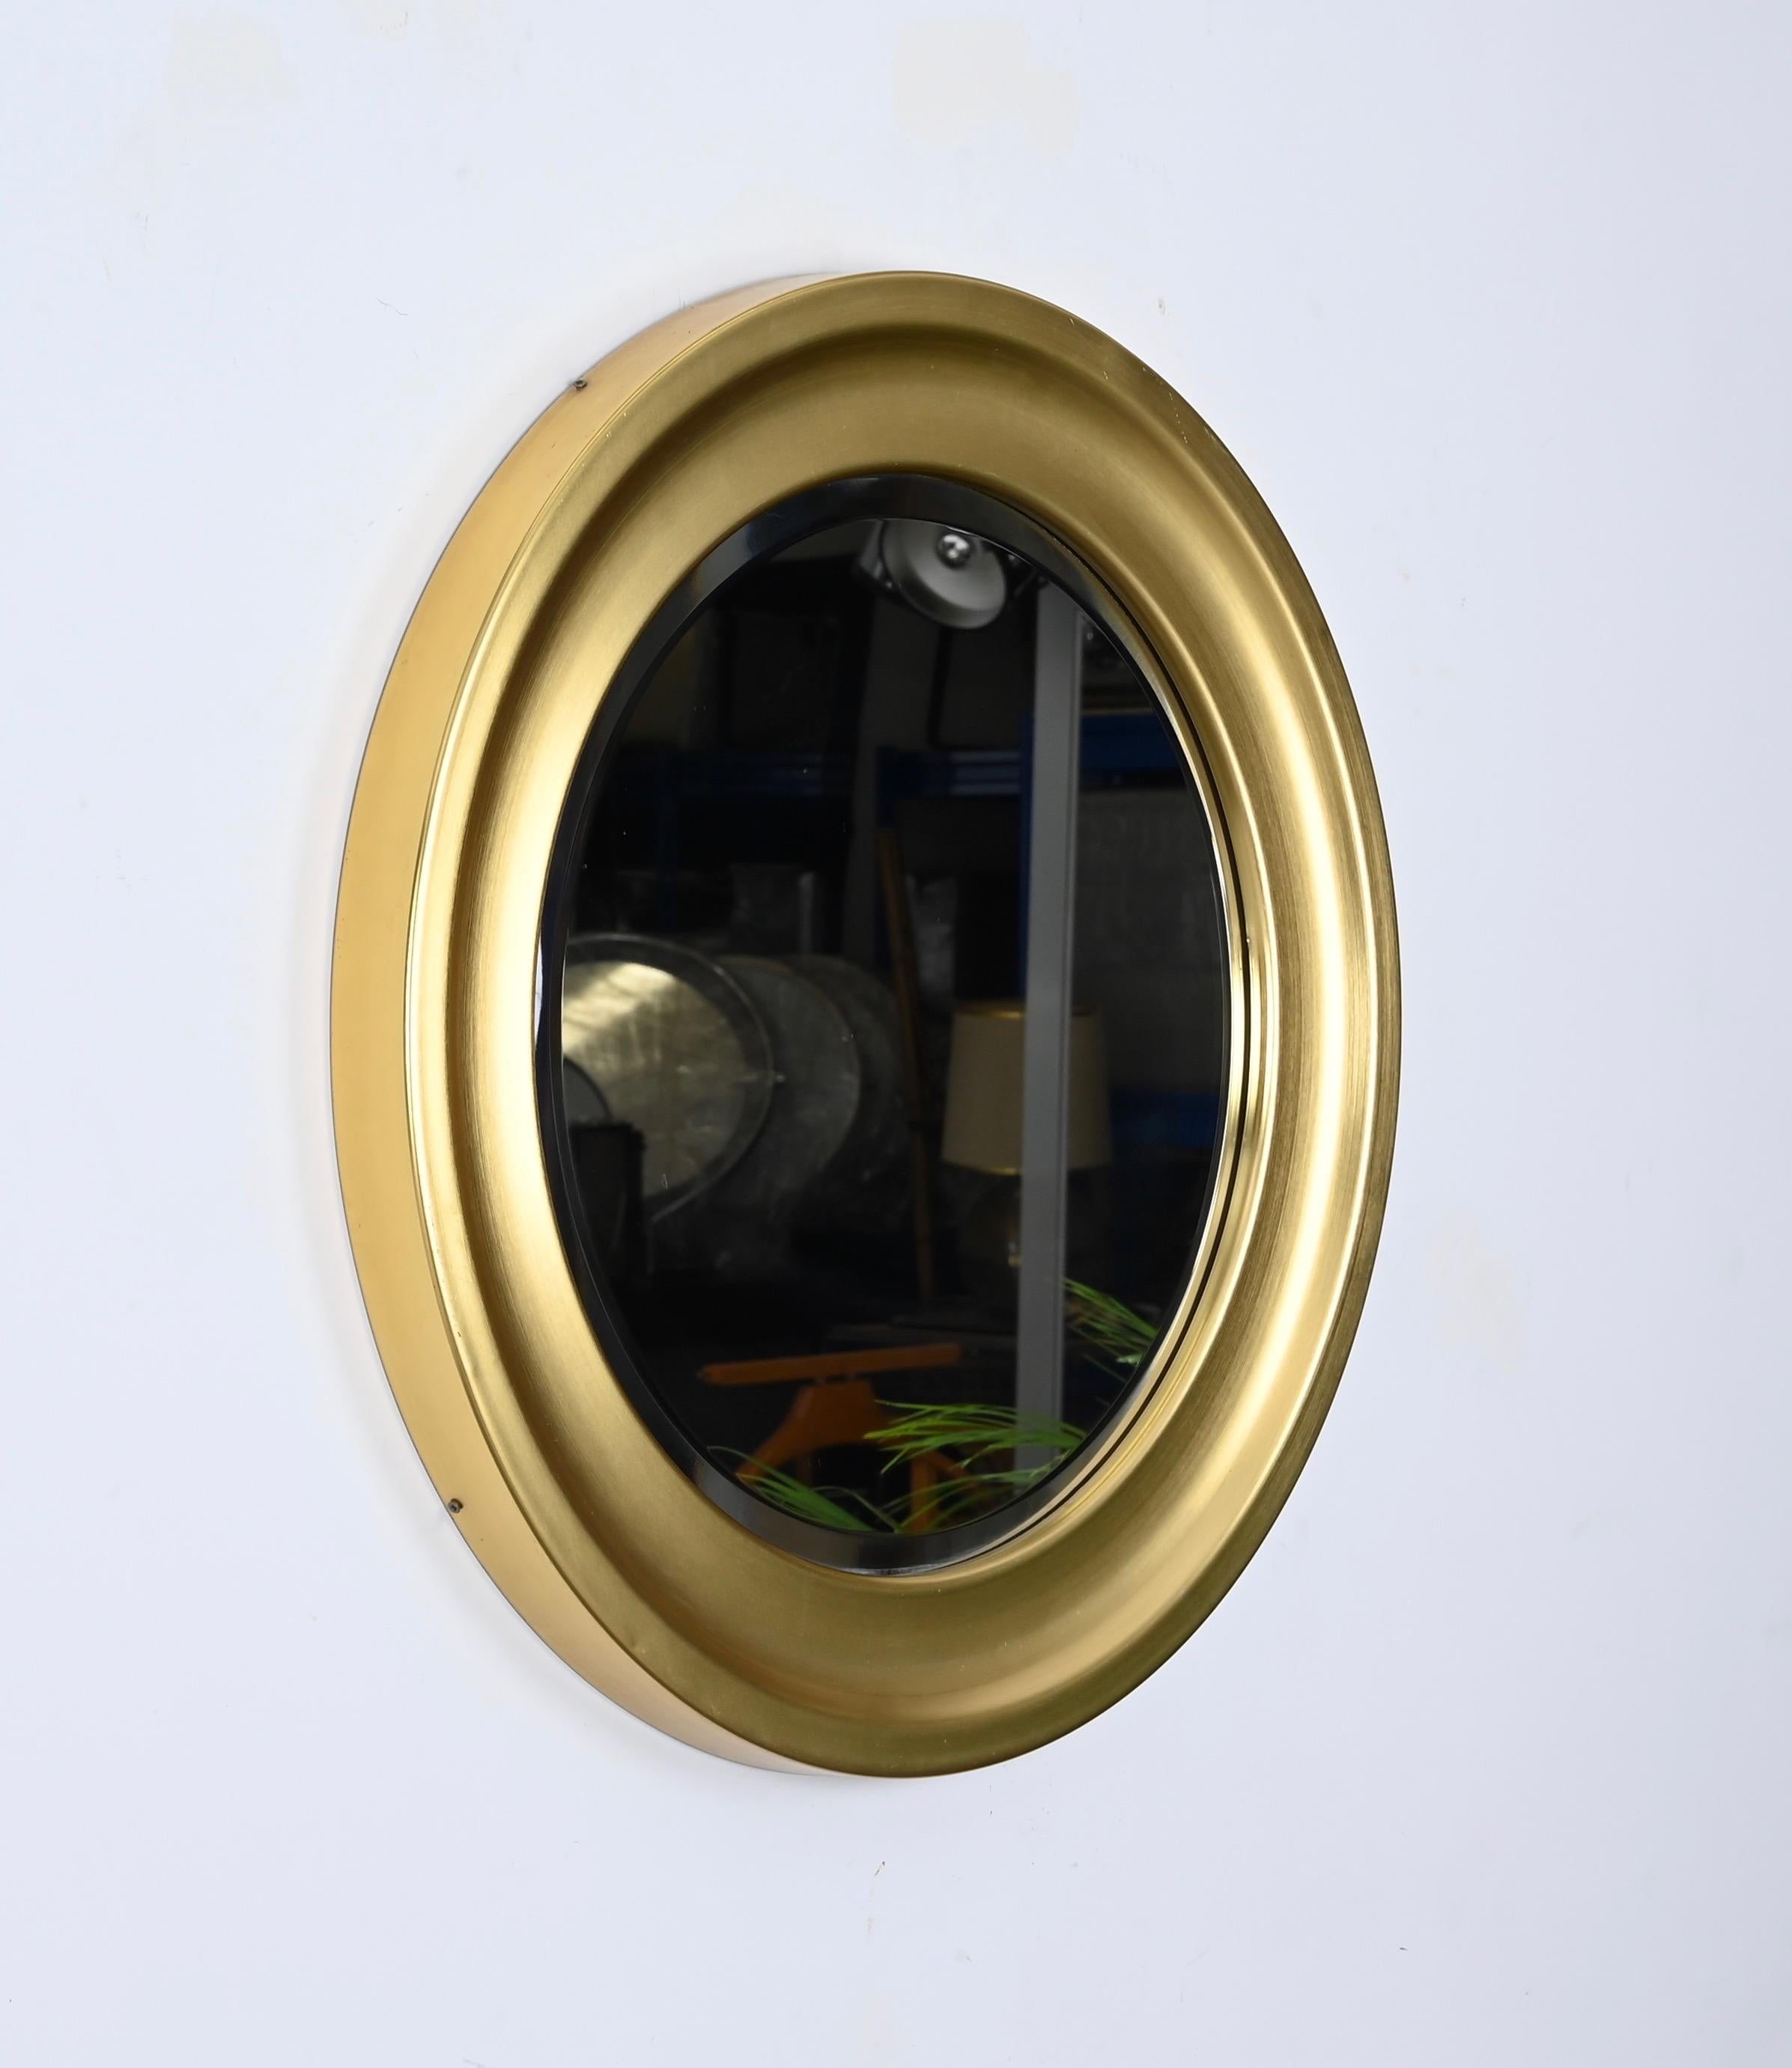 Magnifique miroir moderniste conçu par Sergio Mazza pour Artemide en Italie dans les années 1960.  

Cette version rare du miroir présente un magnifique cadre rond en métal doré avec un miroir rond biseauté. 

Un miroir extrêmement charmant qui